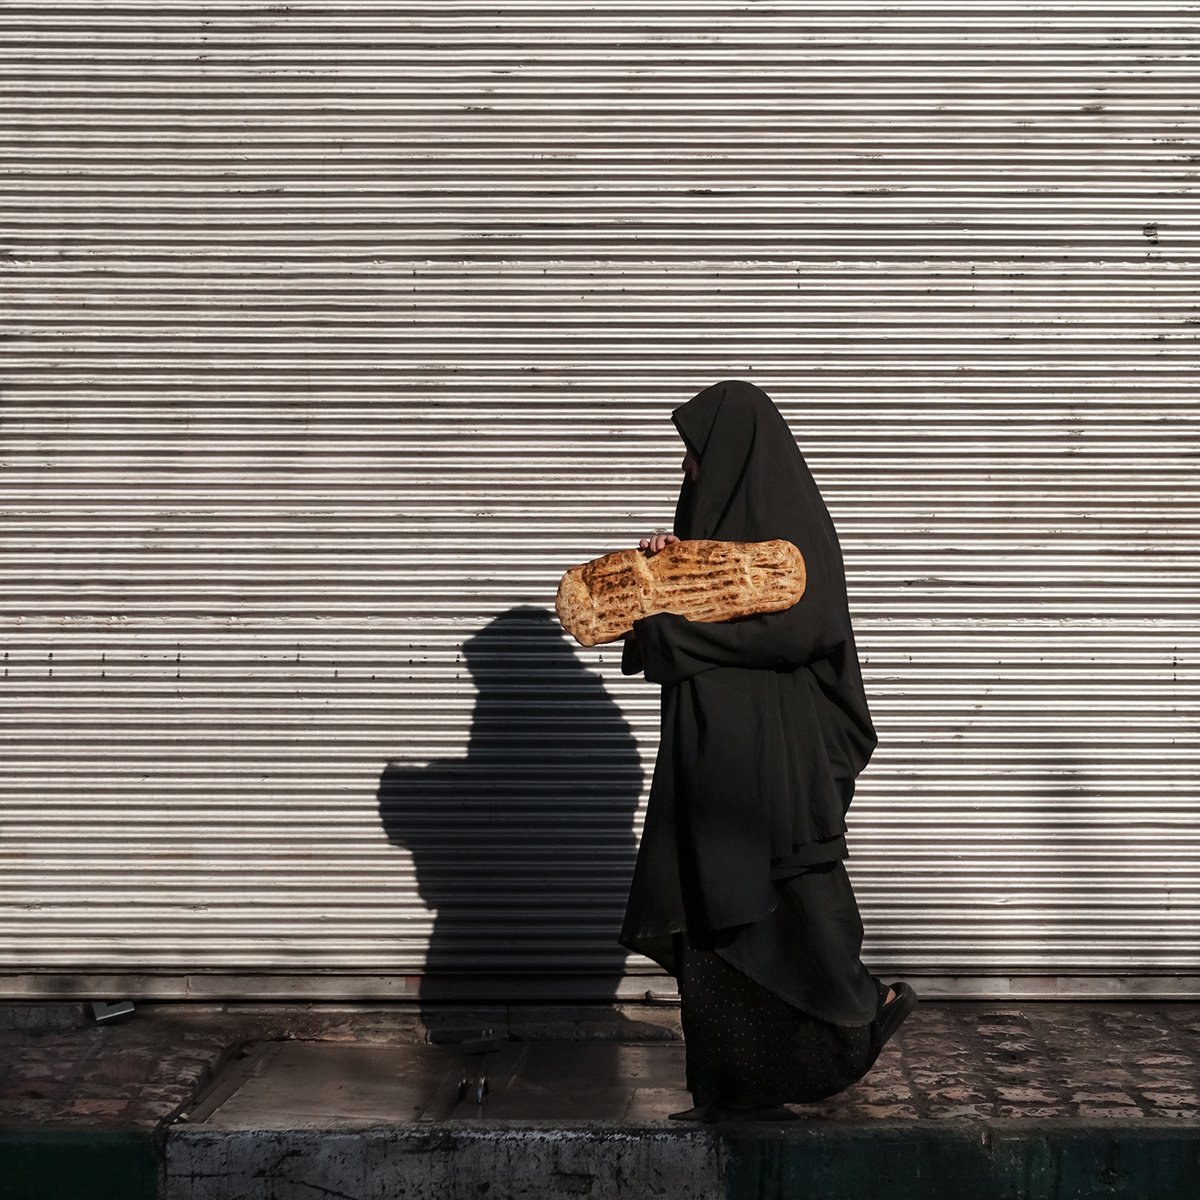 Bread & Breakfast by Jacek Falmur